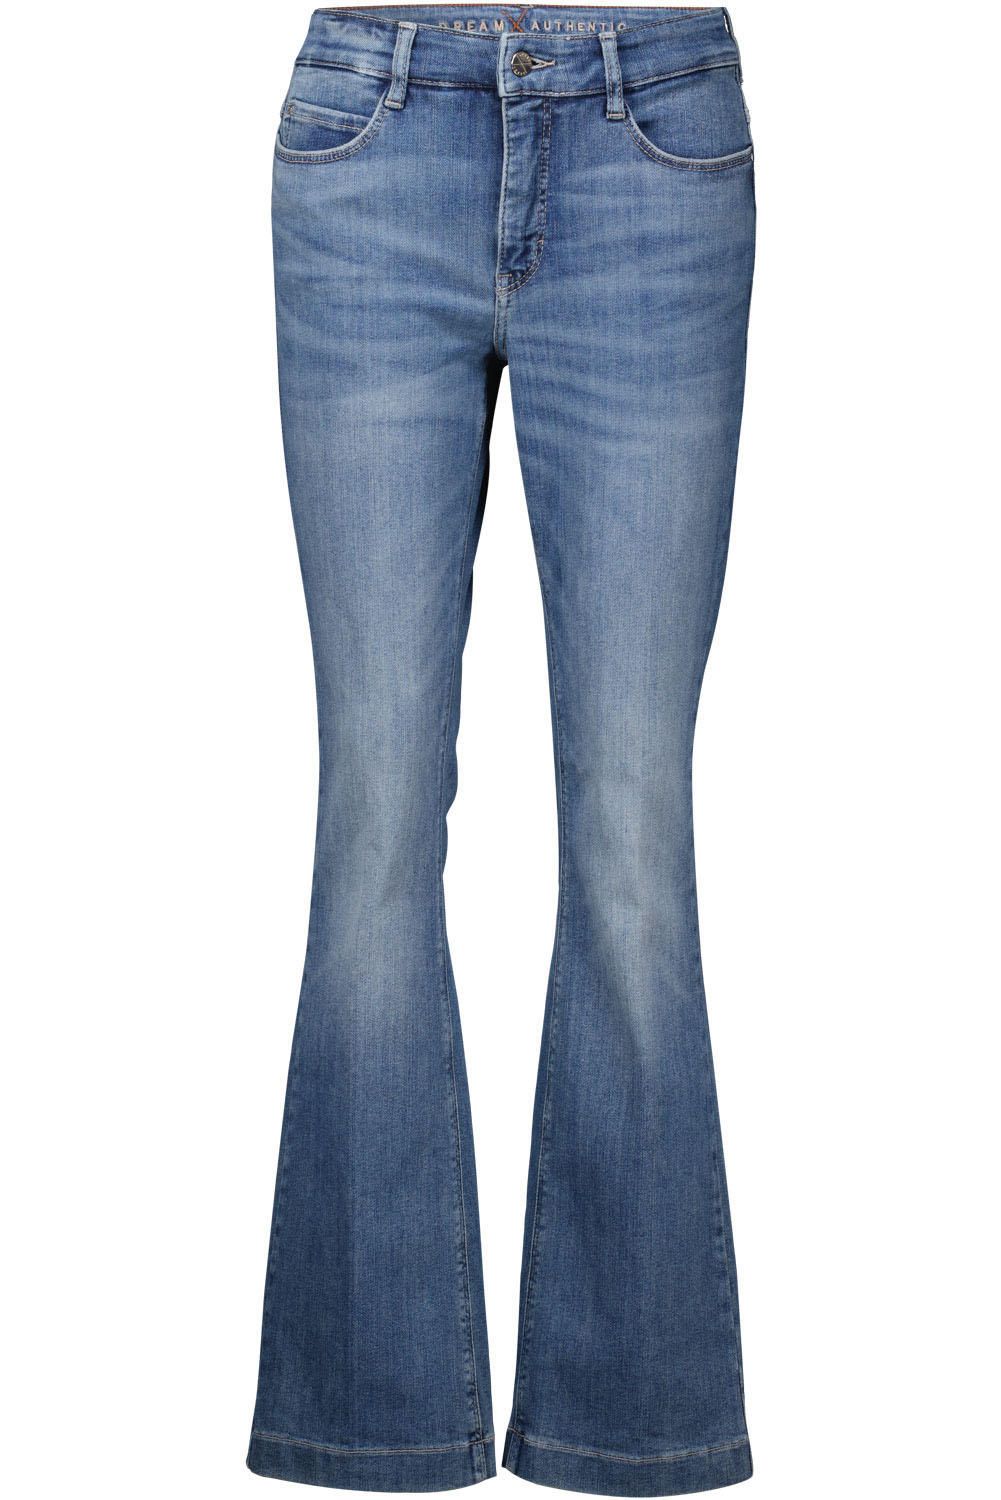 Mac Jeans Spijkerbroek Dream Boot Authentic Blauw 